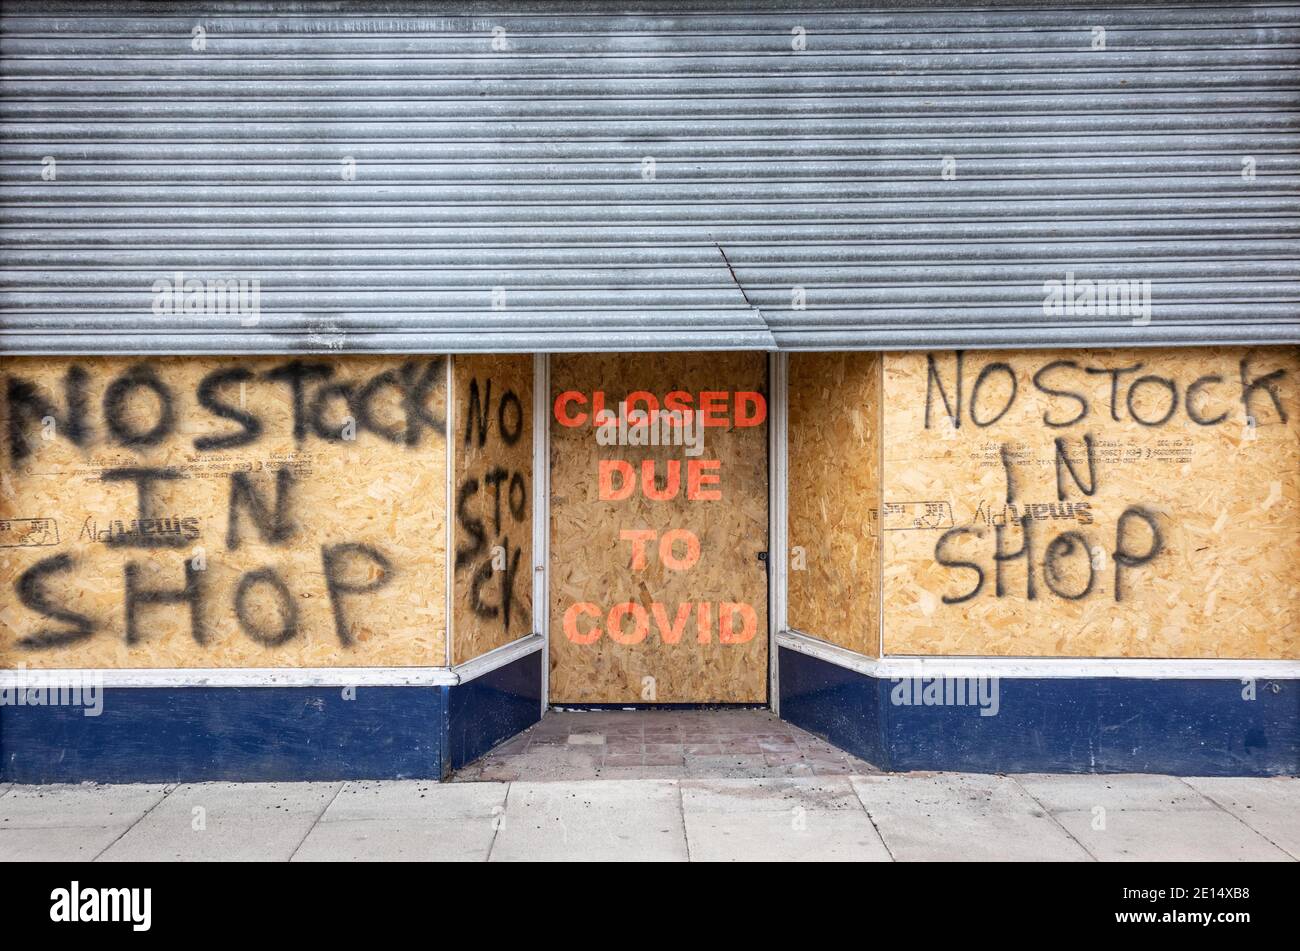 Aucune affiche de stock dans le magasin sur le circuit embarqué fermé en raison de la boutique covid. Coronavirus, Covid 19 Retail, UK Economy concept. Banque D'Images